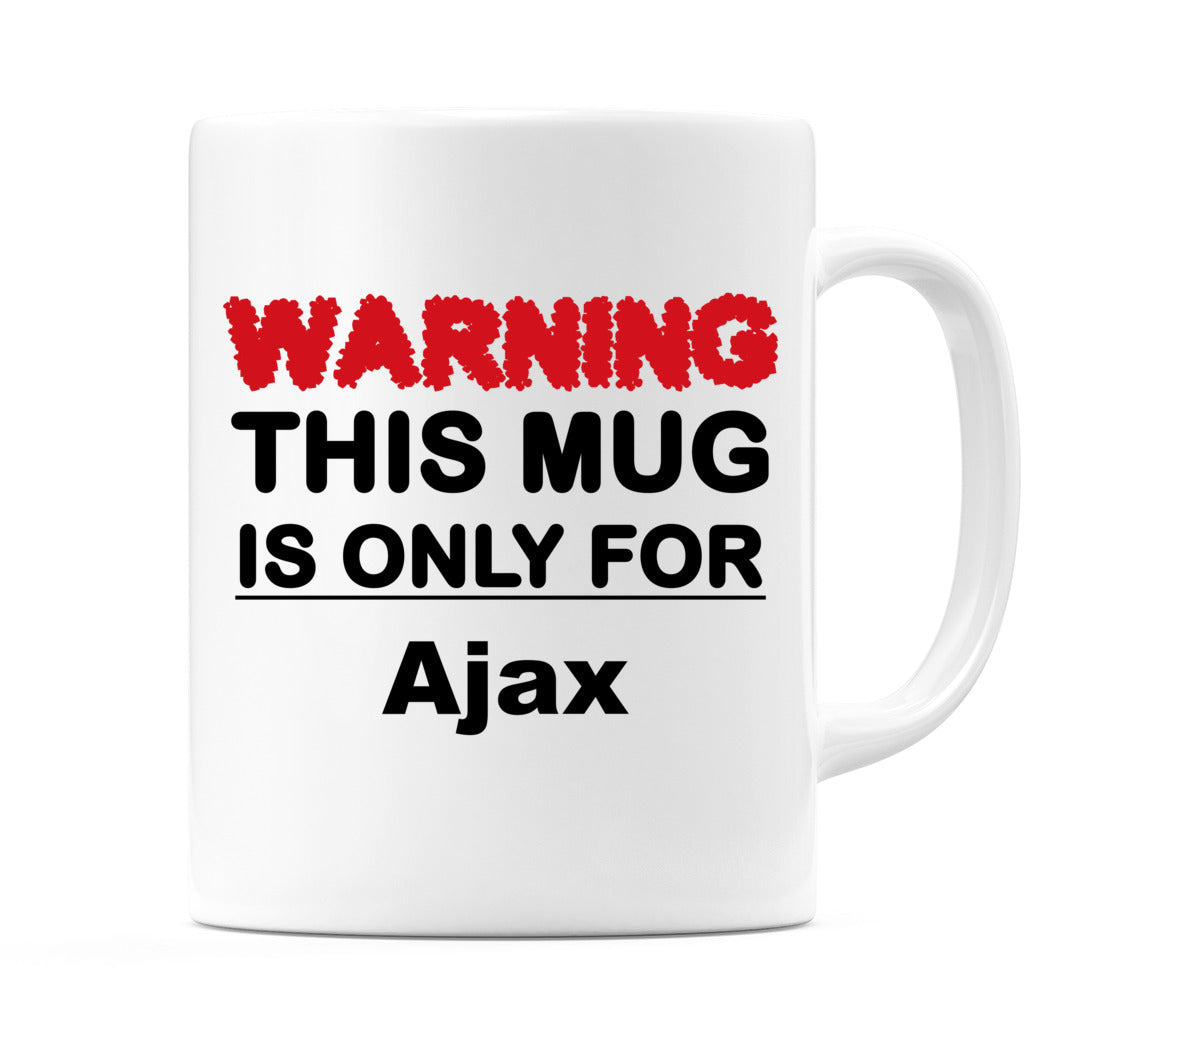 Warning This Mug is ONLY for Ajax Mug